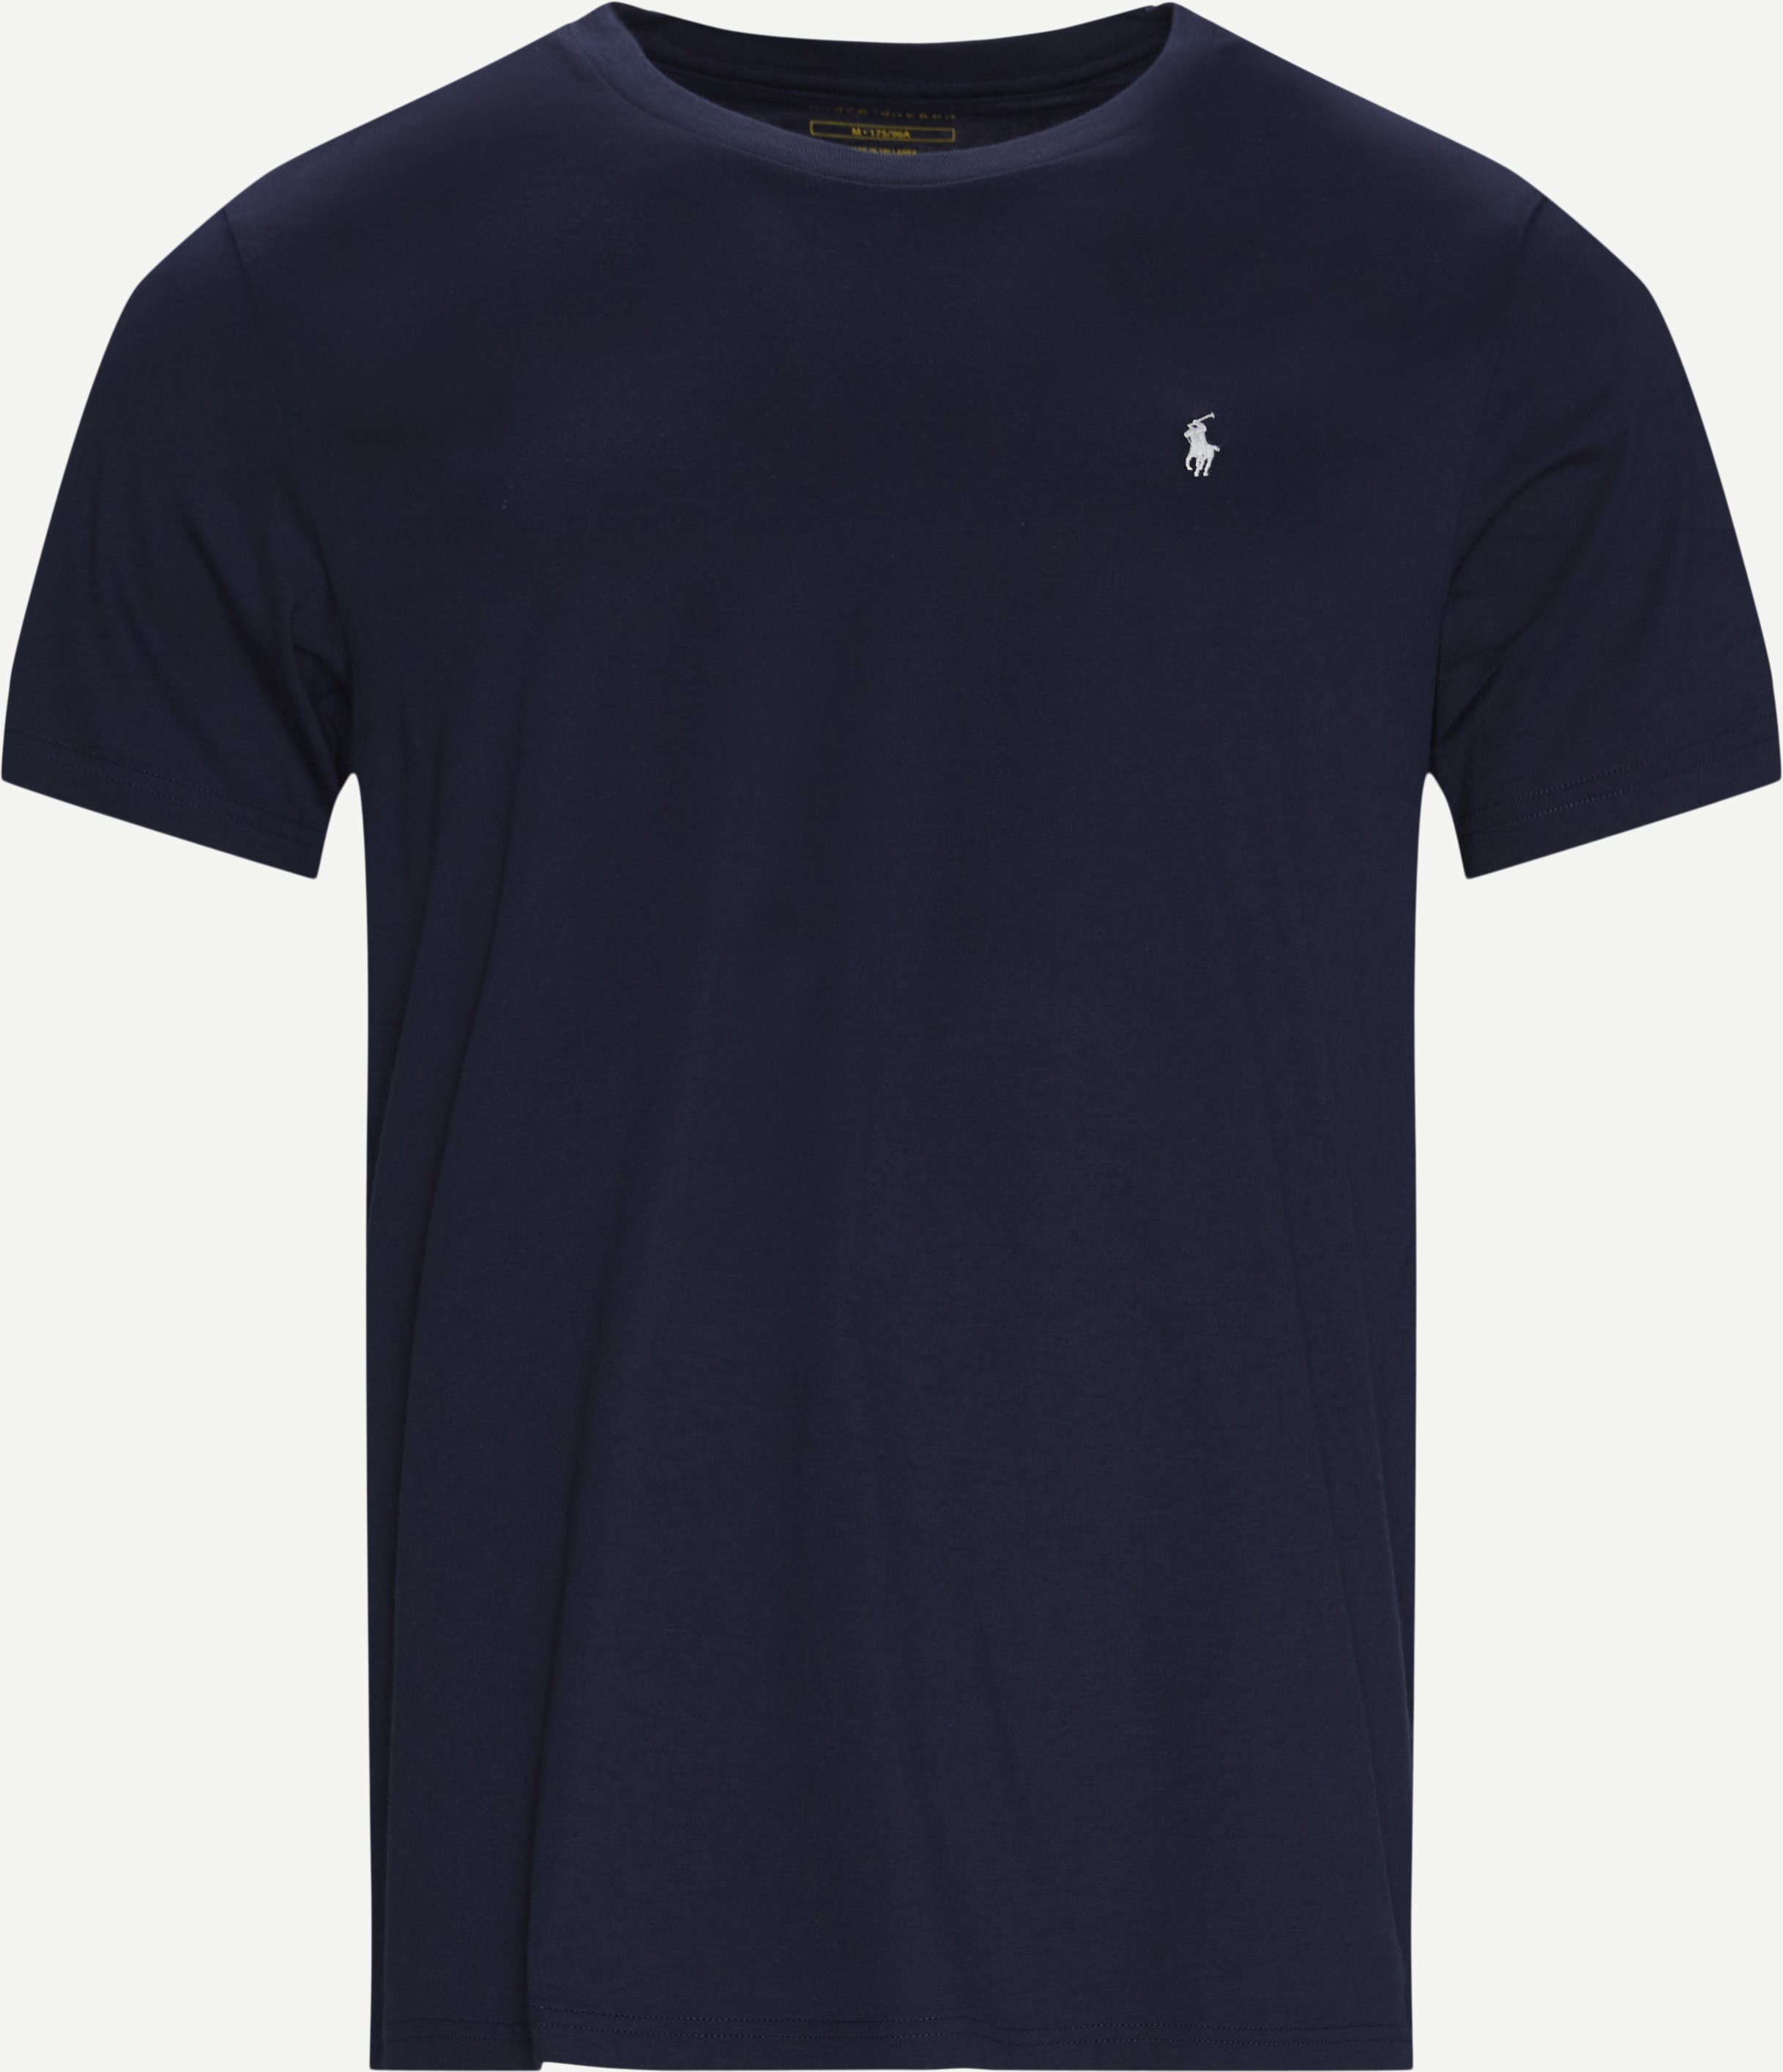 Polo Ralph Lauren T-shirts 714844756. Blå